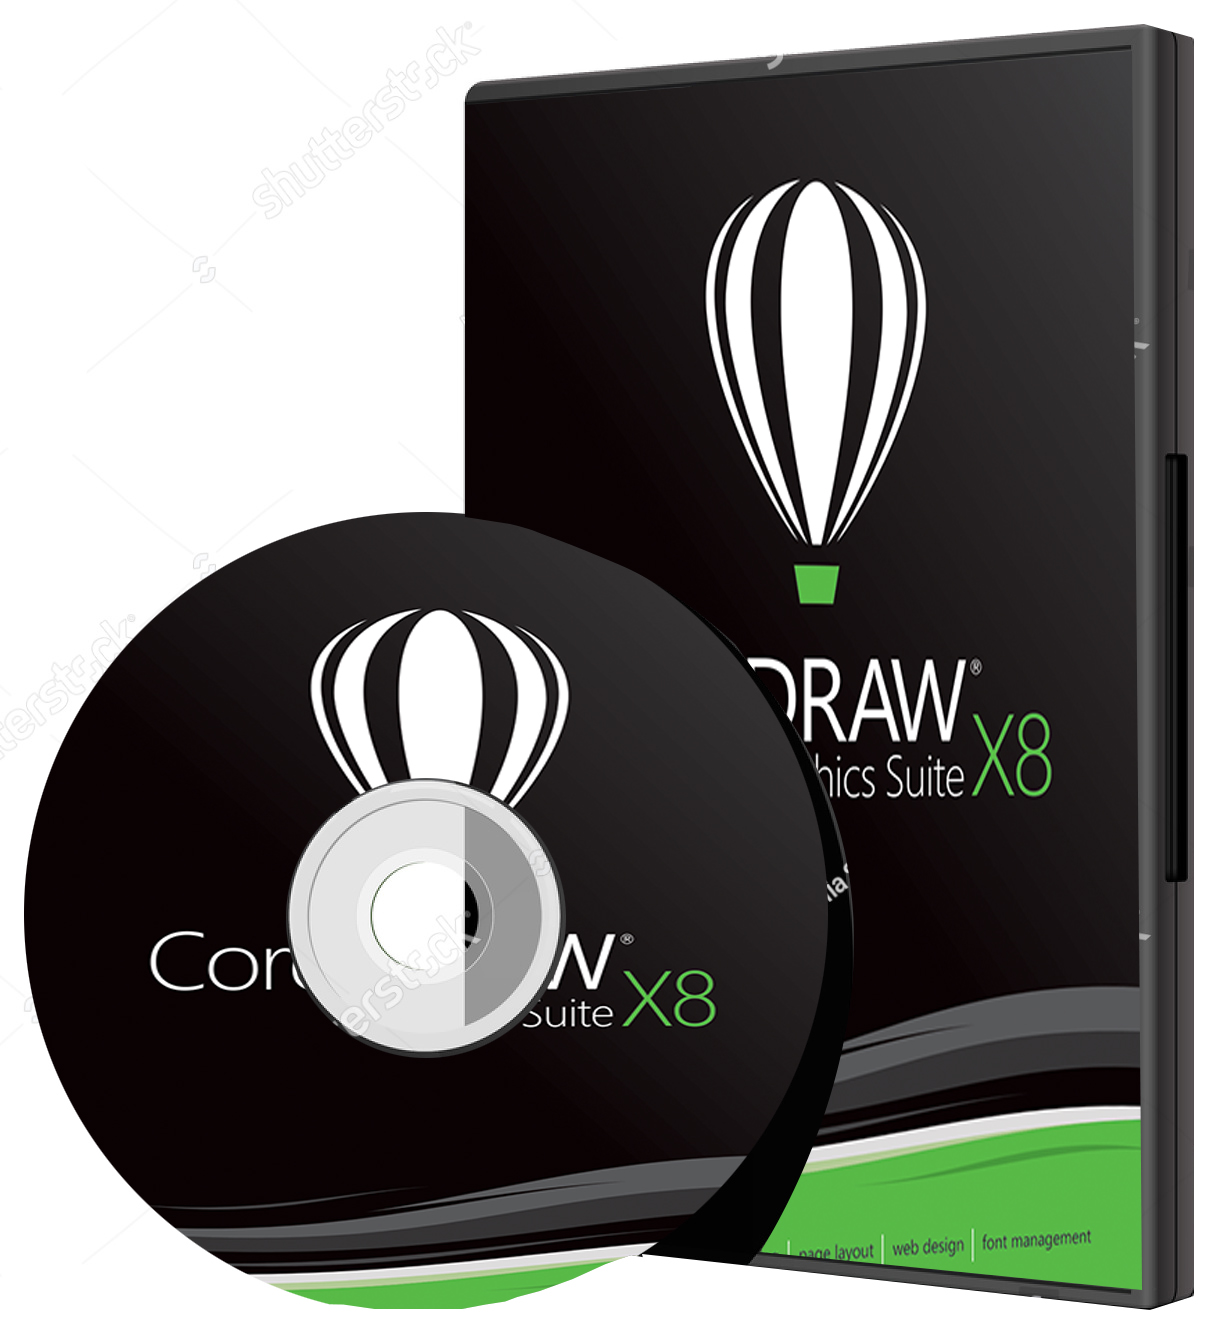 coreldraw x8 32-bit free download